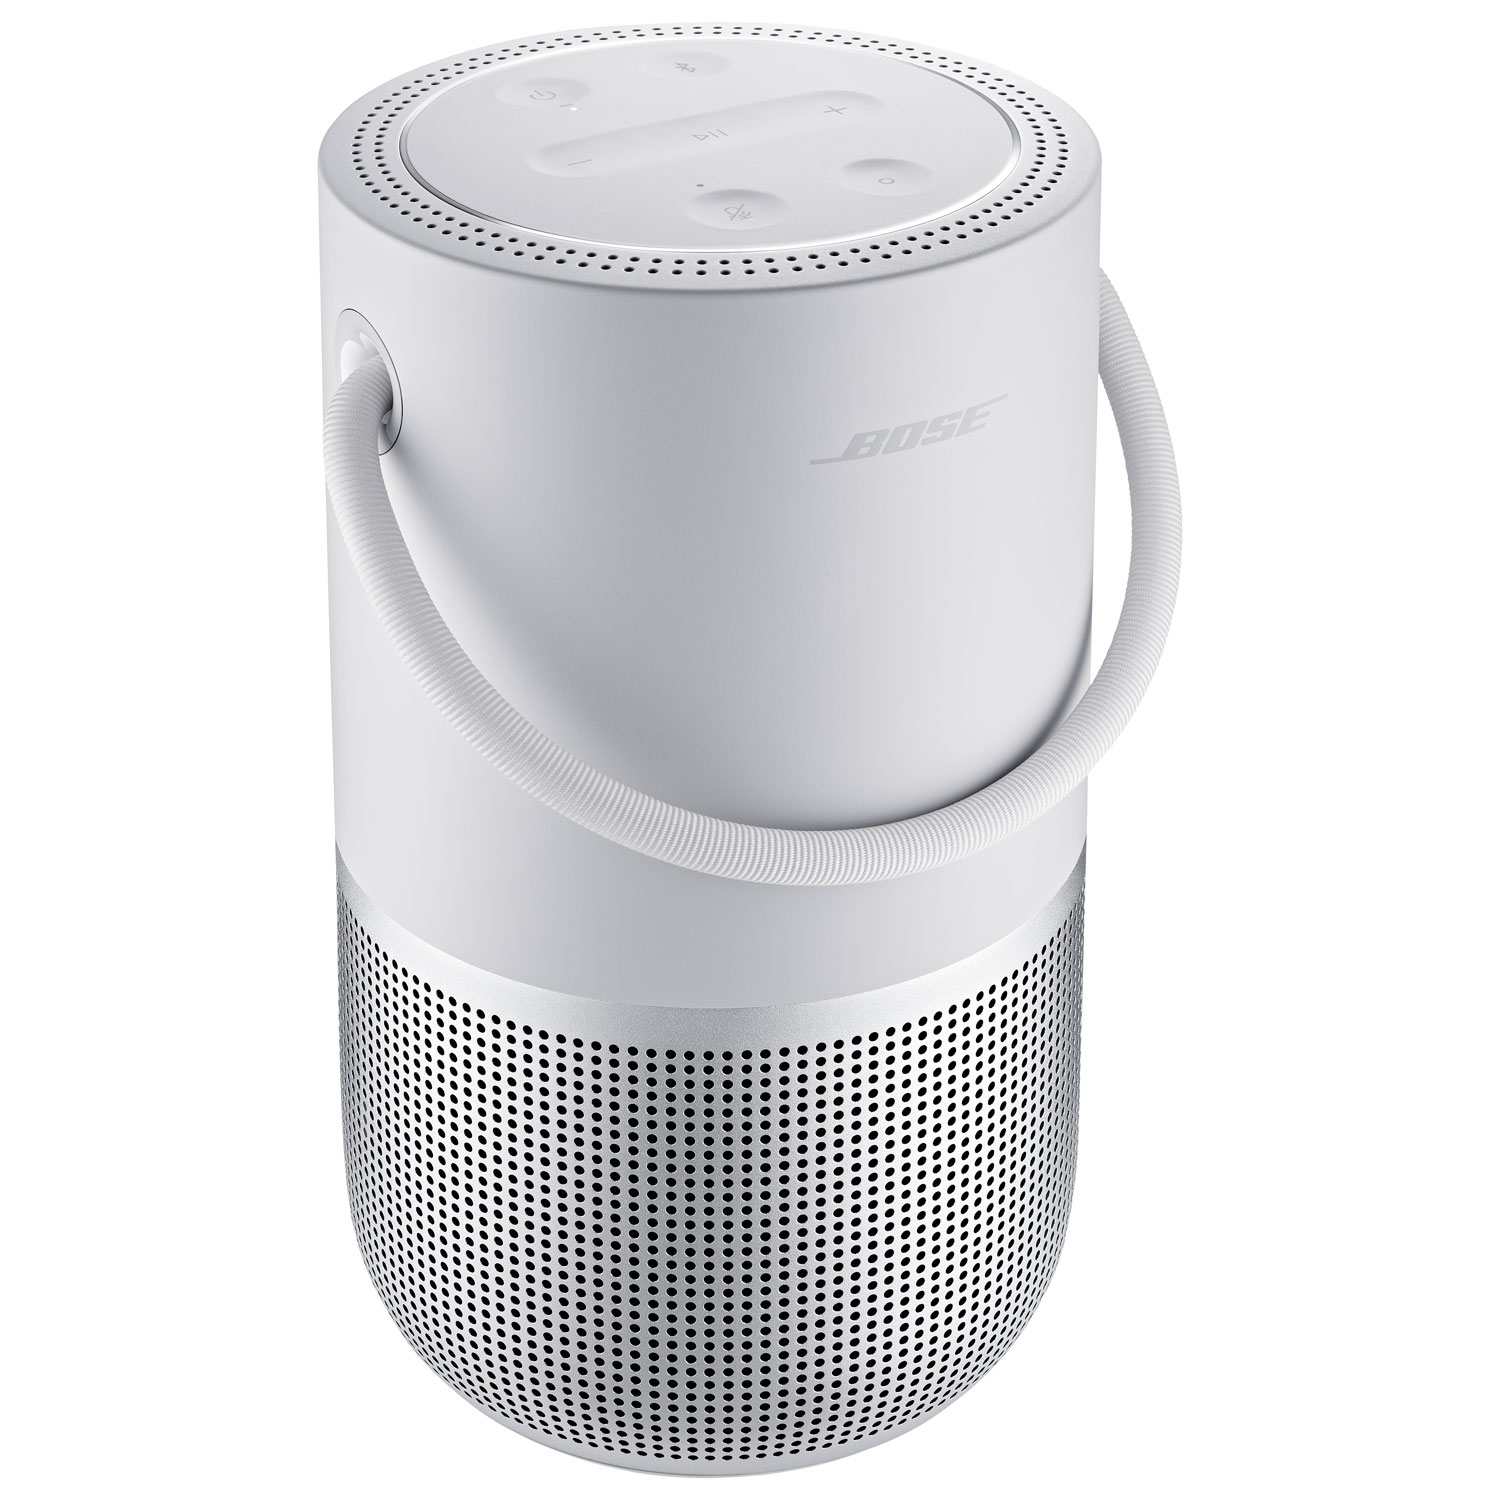 Bose Portable Smart Splashproof Bluetooth Wireless Speaker - Luxe Silver